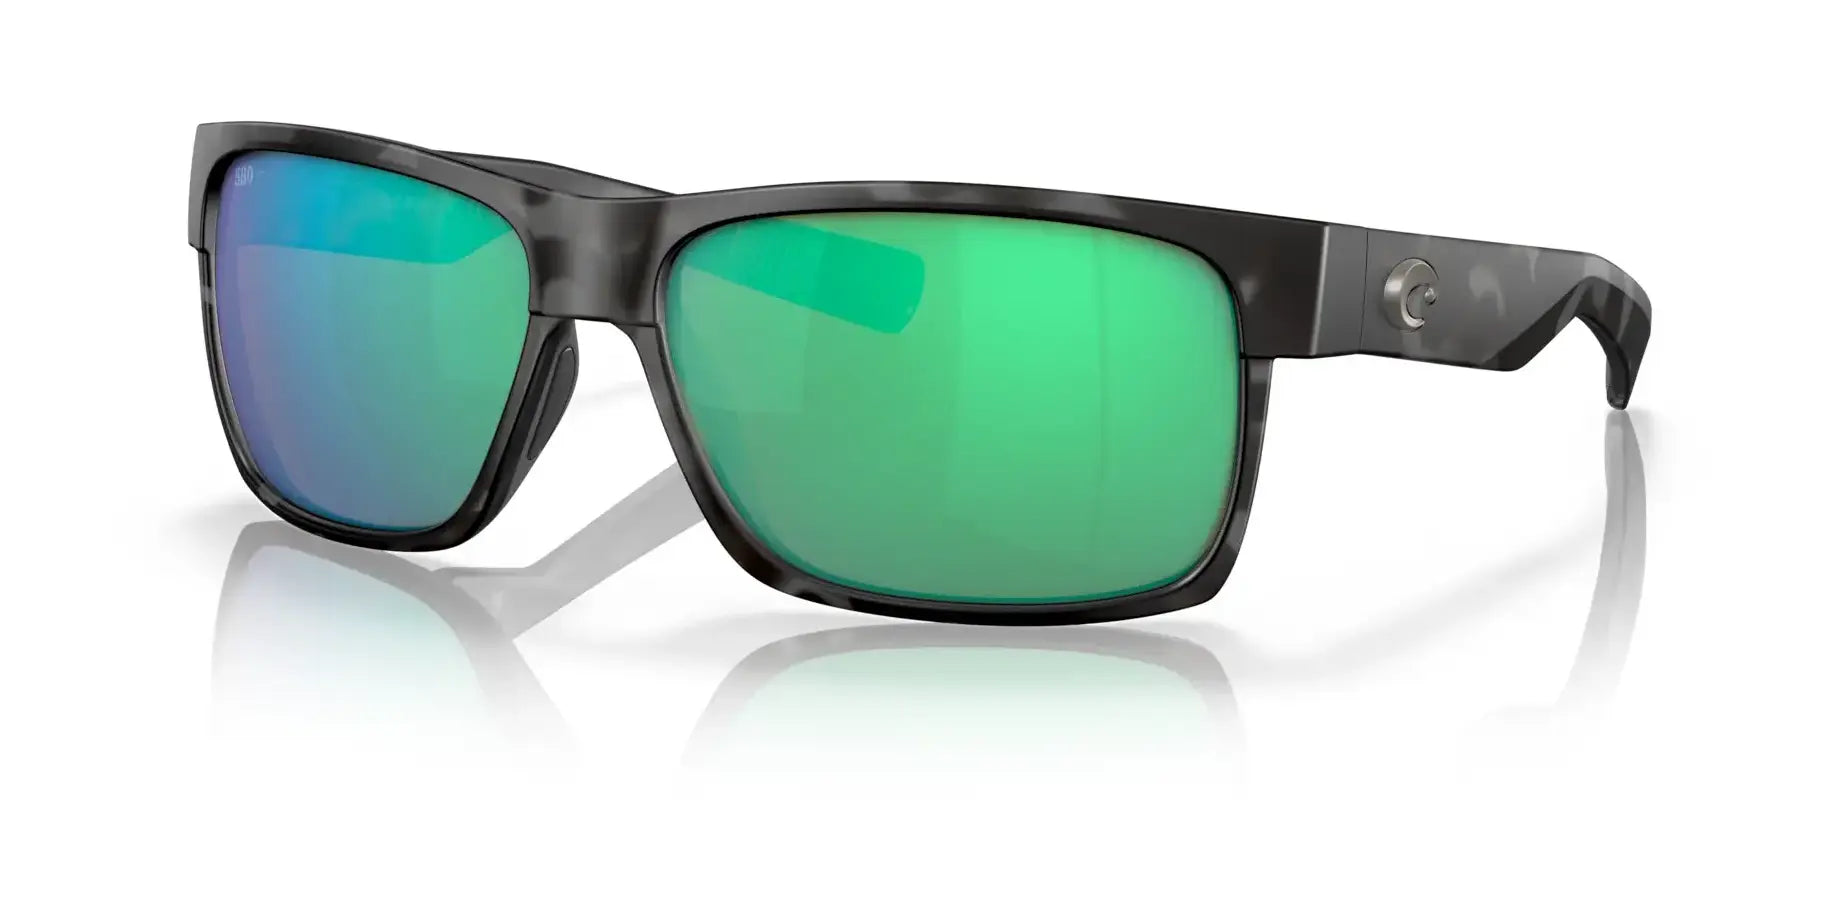 Costa HALF MOON 6S9026 Sunglasses Tiger Shark / Green Mirror